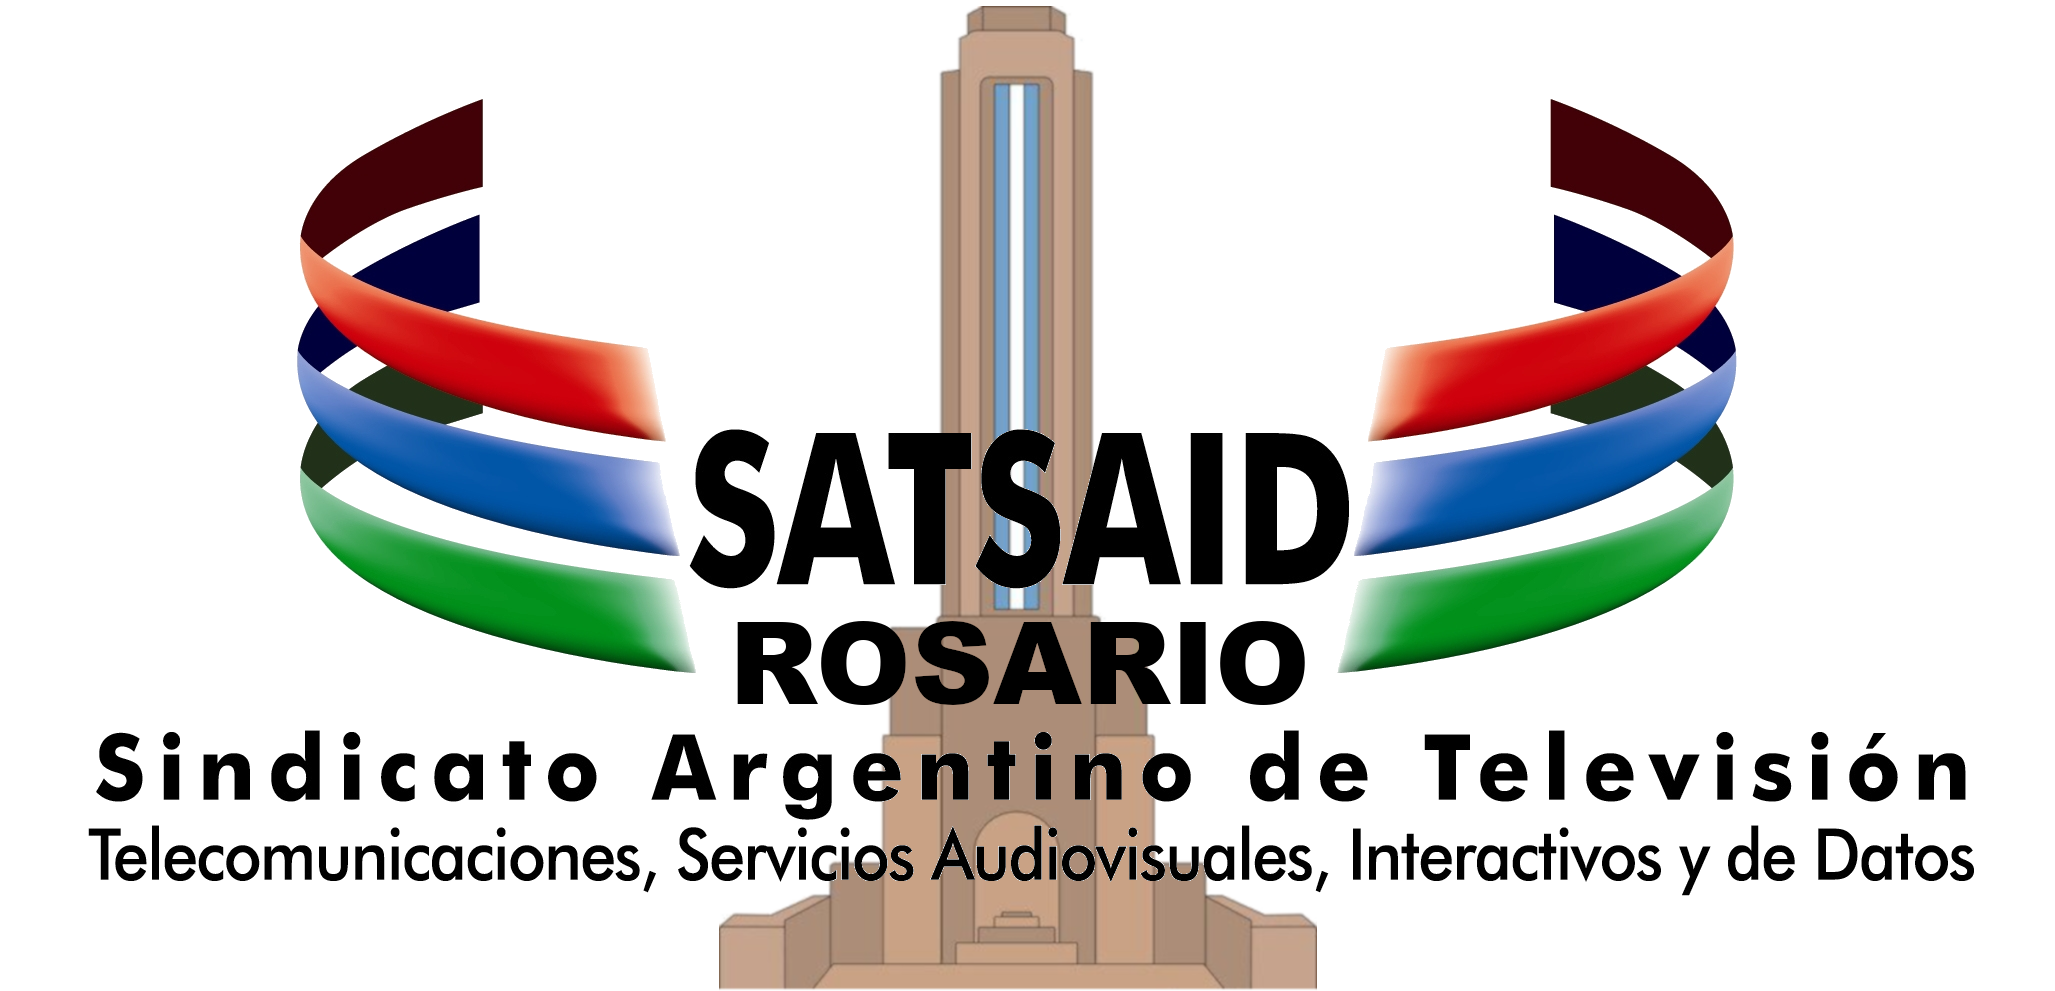 Sindicato Argentino de Television, Telecomunicaciones, Servicios Audiovisuales, Interactivos y de Datos Seccional Rosario